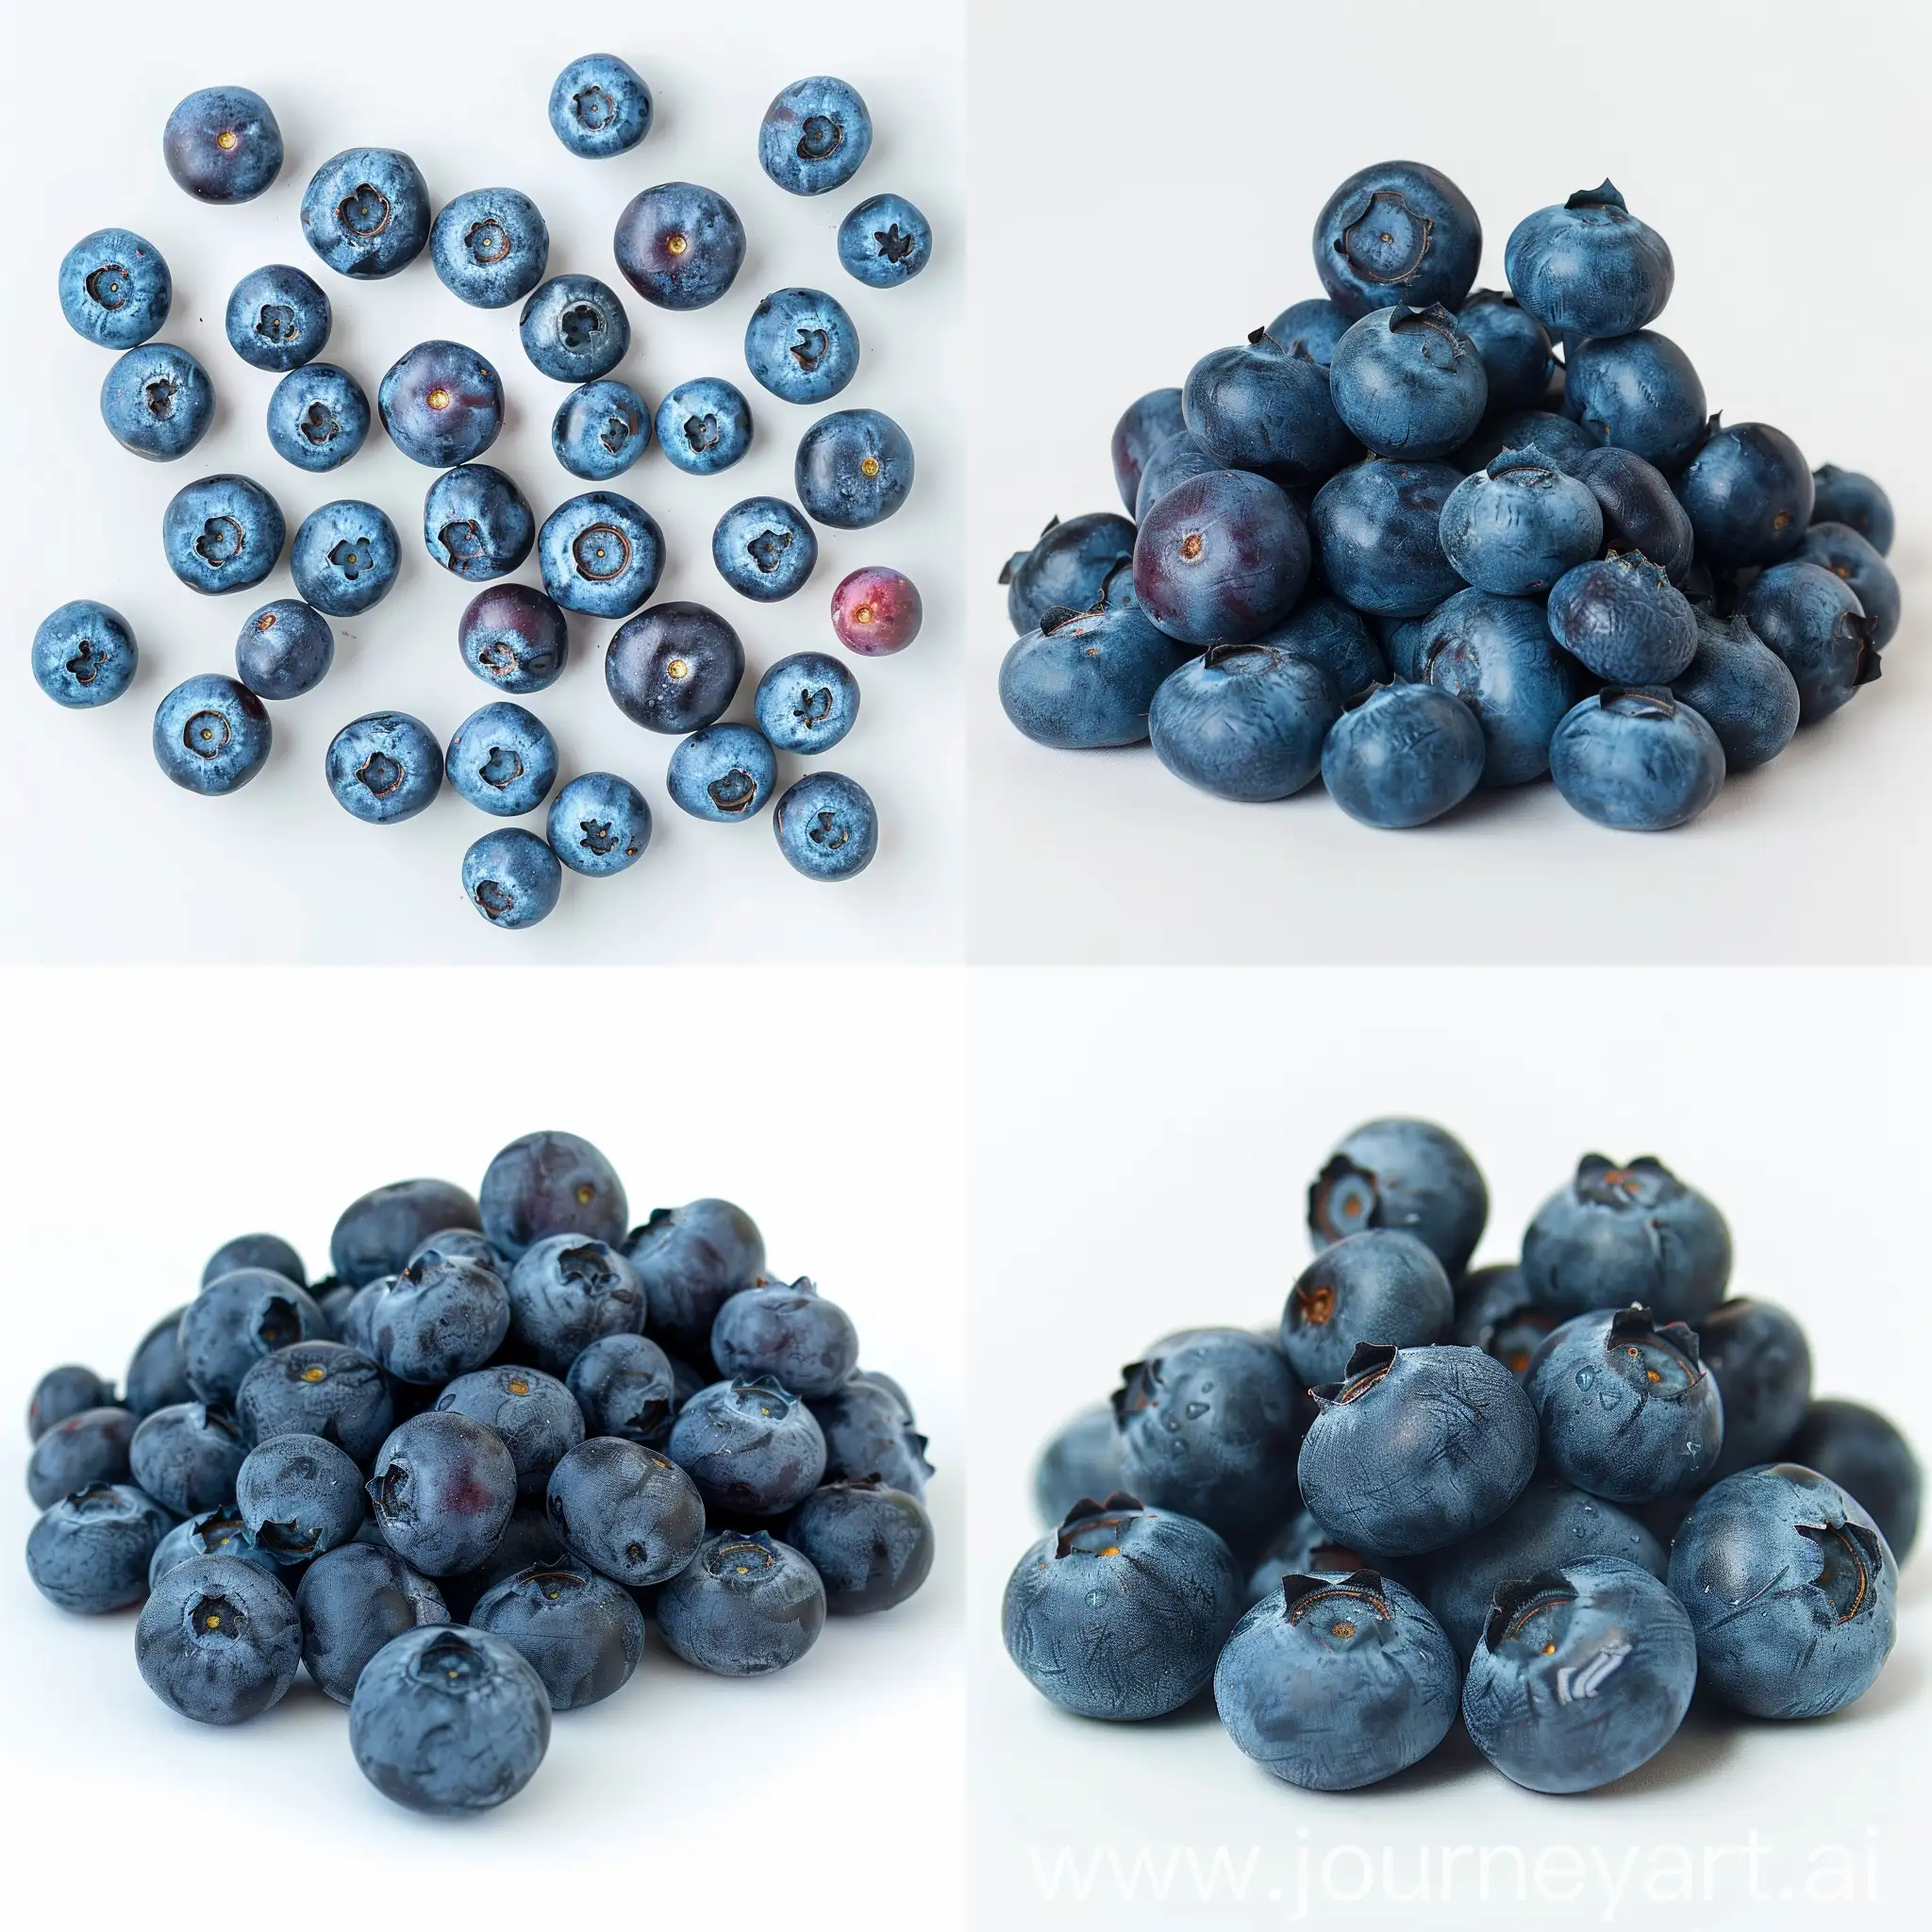 Vibrant-Blueberries-on-White-Background